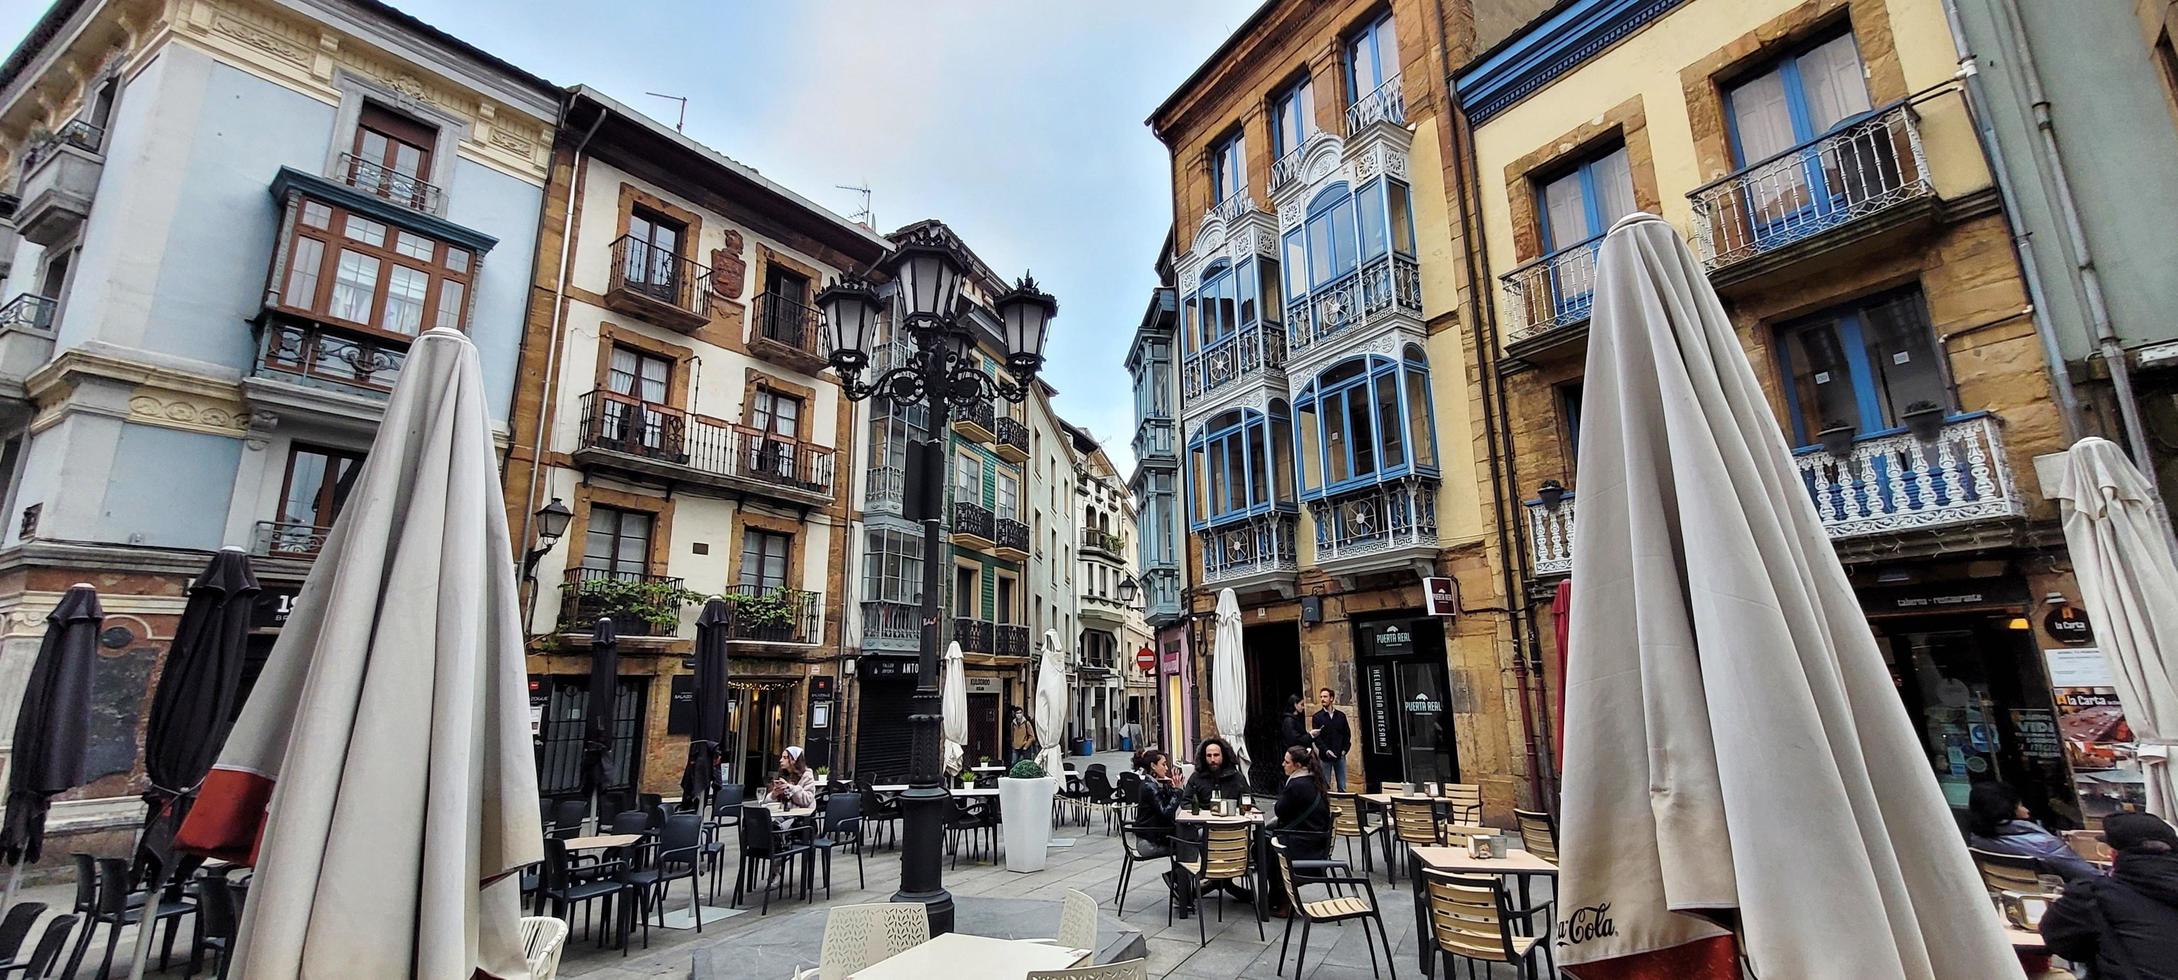 strade della città vecchia di oviedo, asturie, spagna, aprile 2022 foto